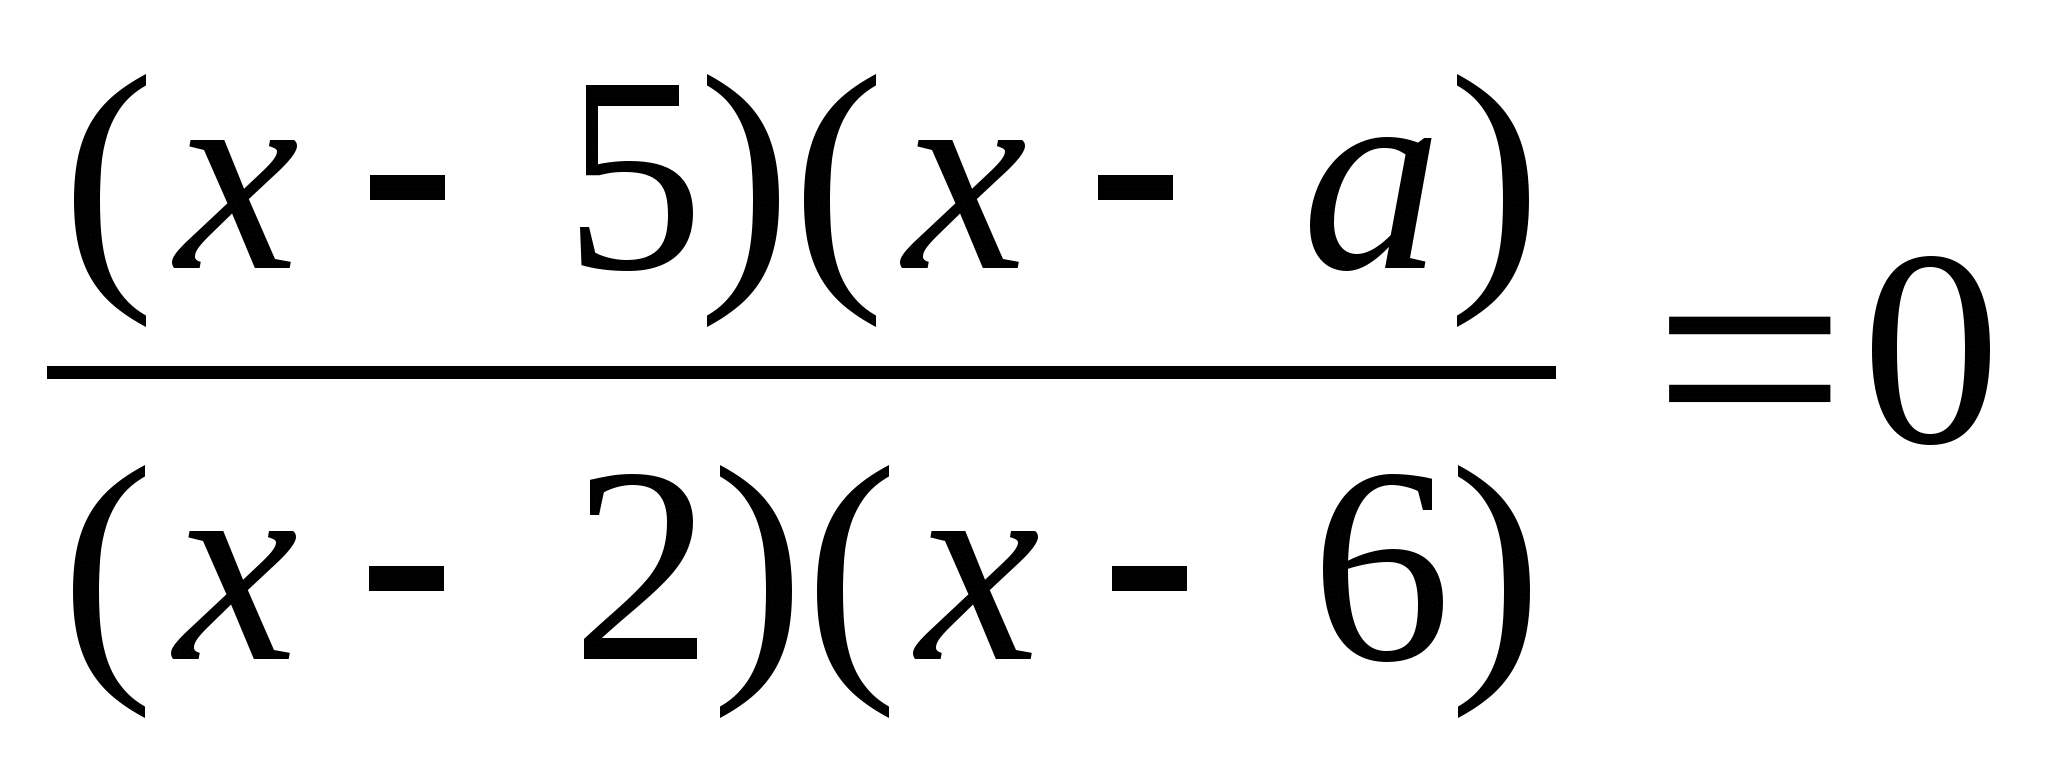 Контрольная работа по алгебре на тему Рациональные уравнения (9 класс)